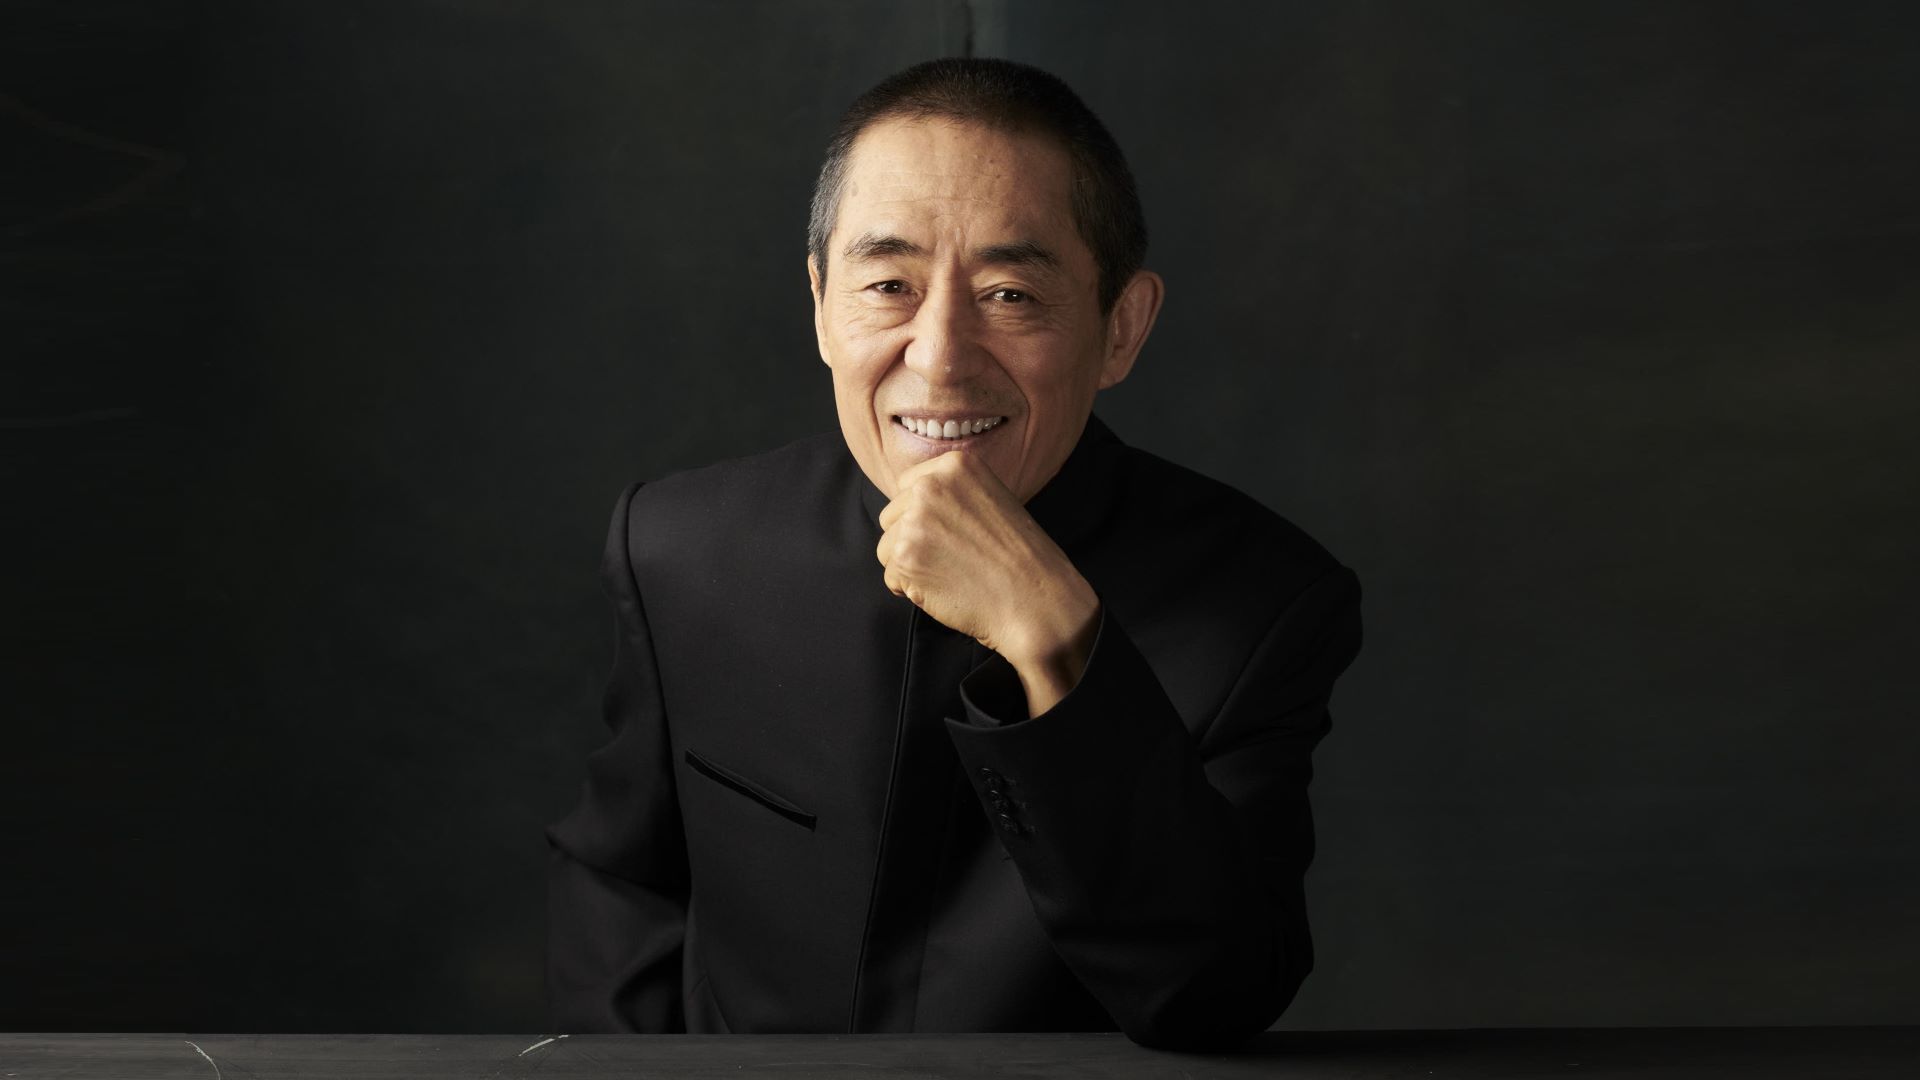 Smiling Zhang Yimou wearing a black suit